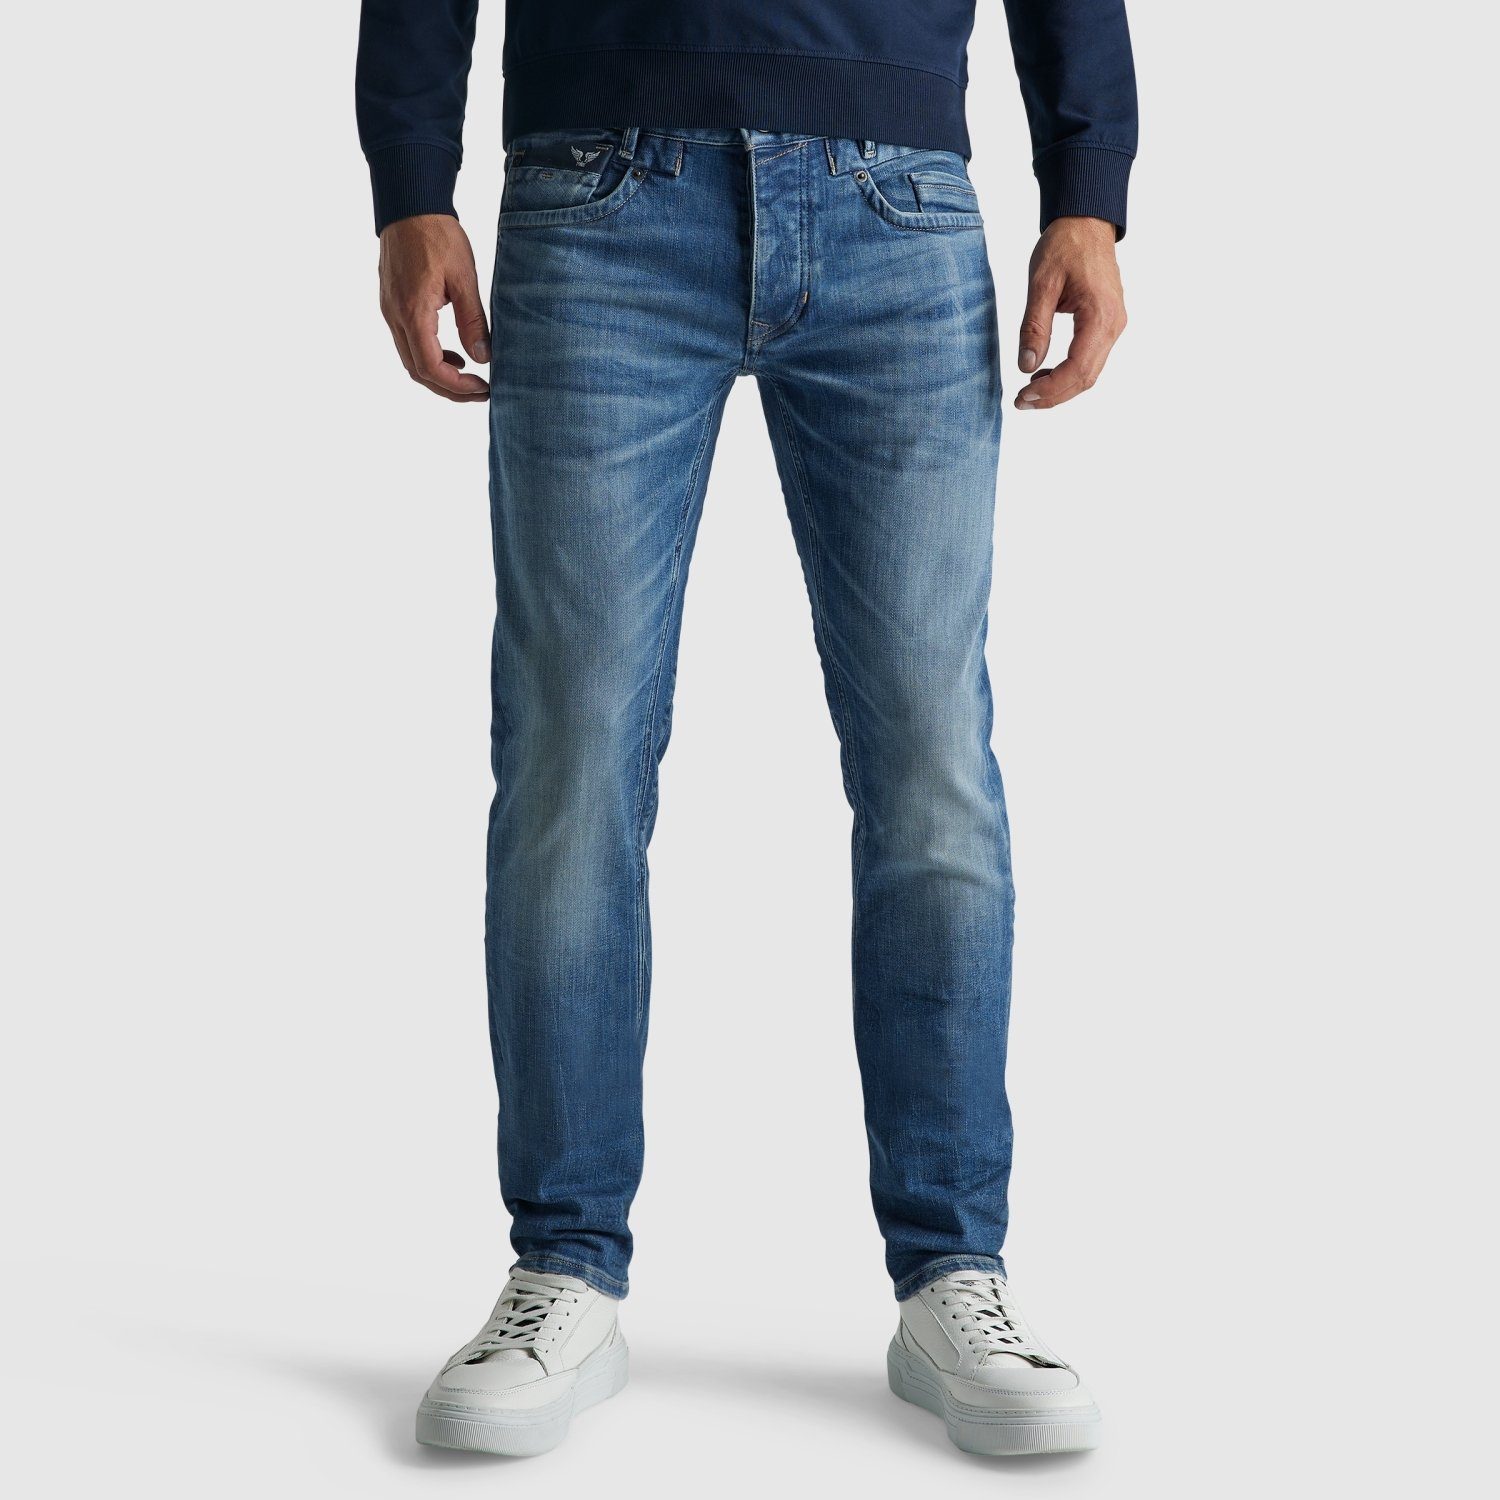 PME LEGEND PME 5-Pocket-Jeans COMMANDER JEANS